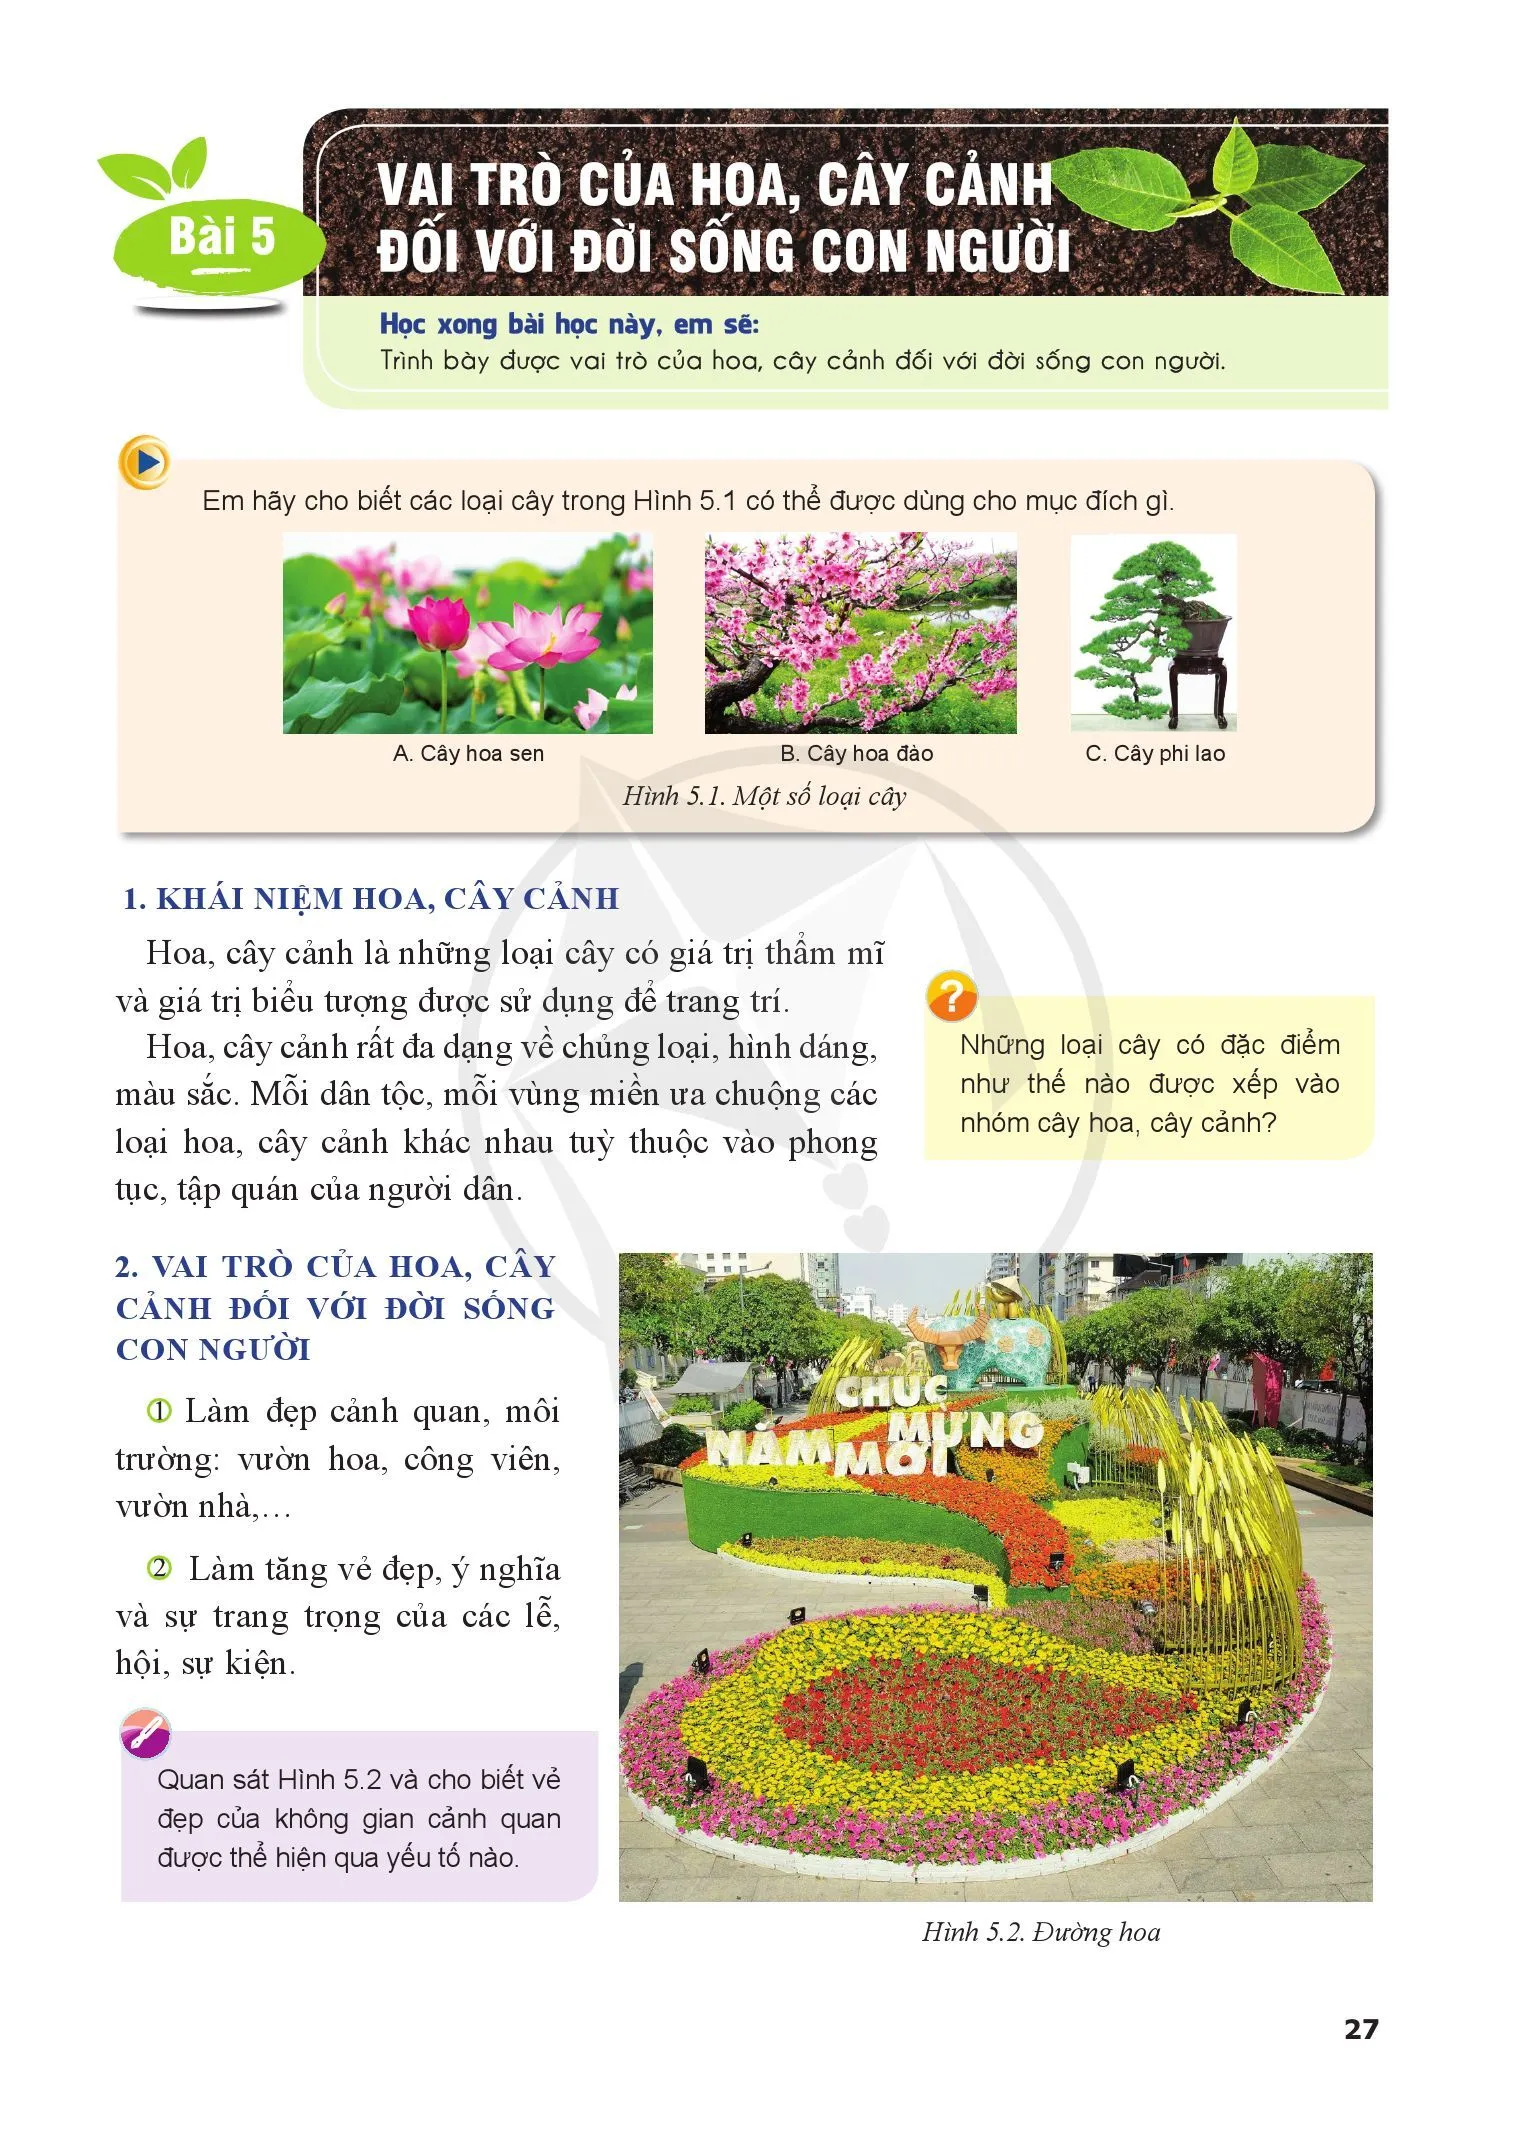 Chuyên đề 2. Trỗng và chăm sóc hoa, cây cảnh